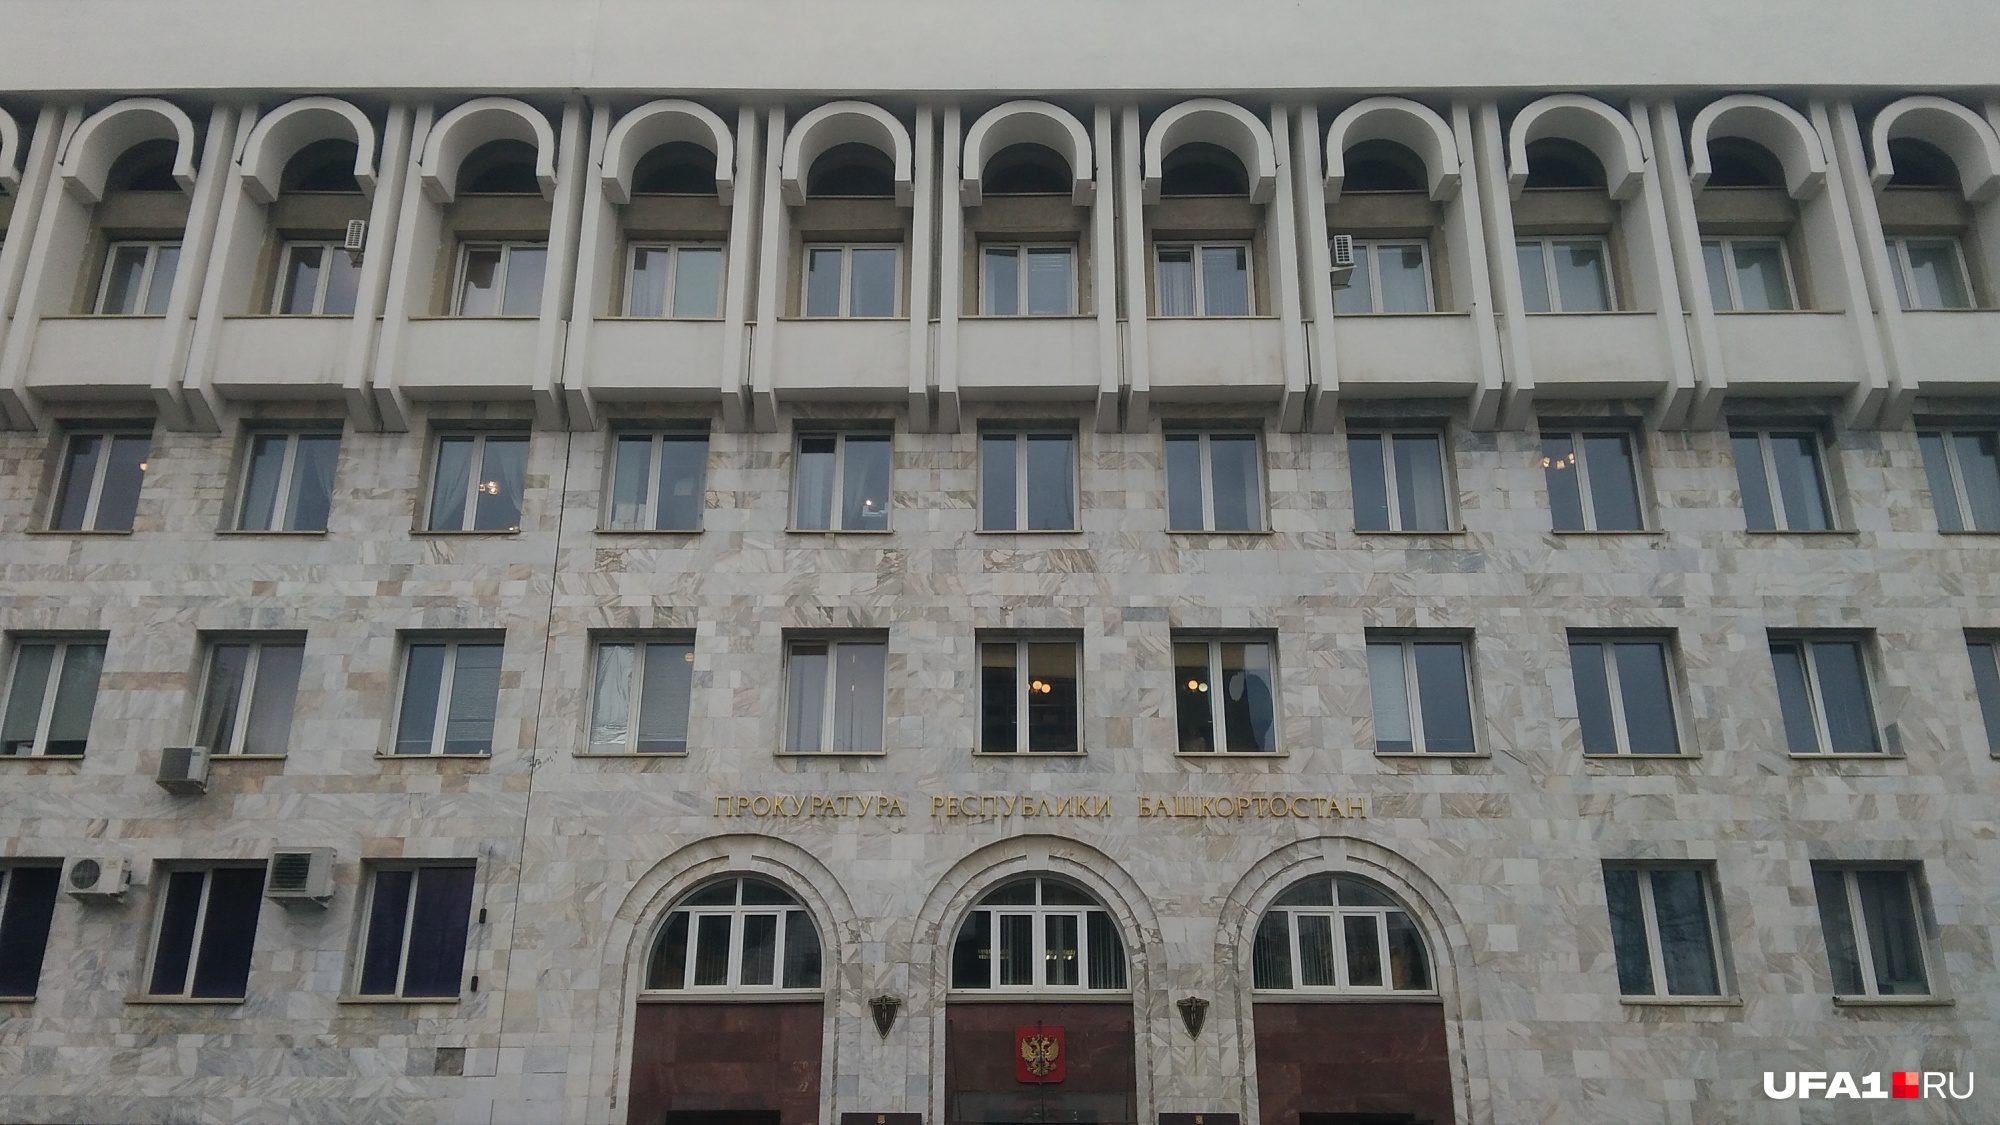 Отсутствие любопытных лиц в окнах придавало ощущение обреченности протеста Фаткуллы Исхакова